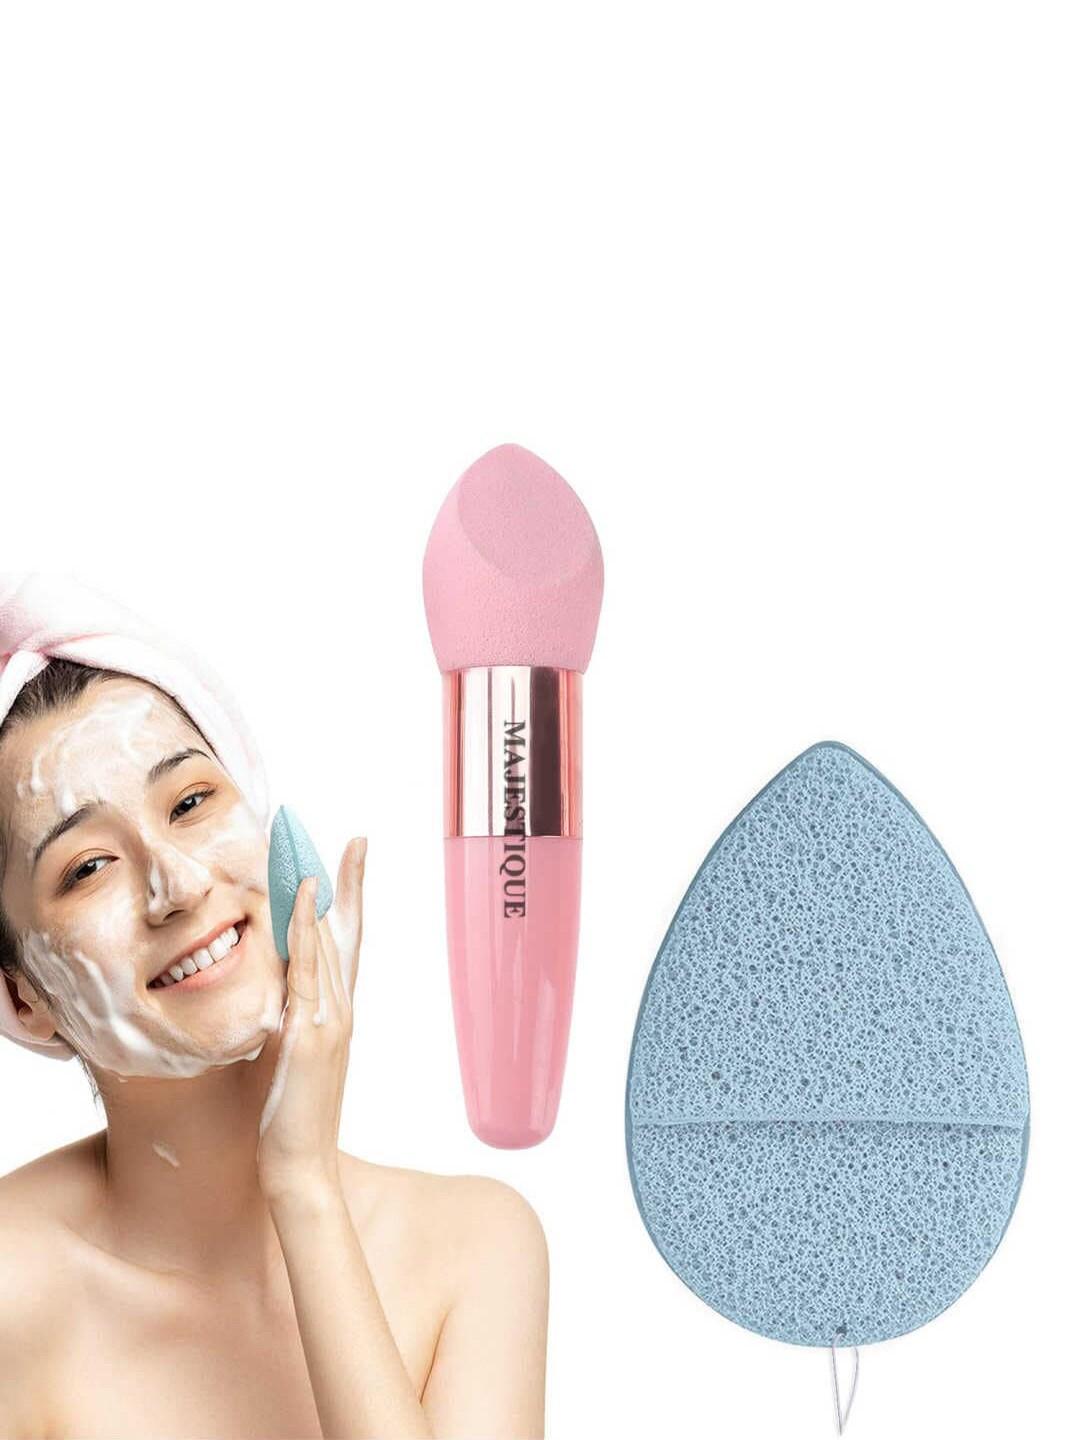 MAJESTIQUE Facial Cleaning Sponge with Cut Makeup Sponge